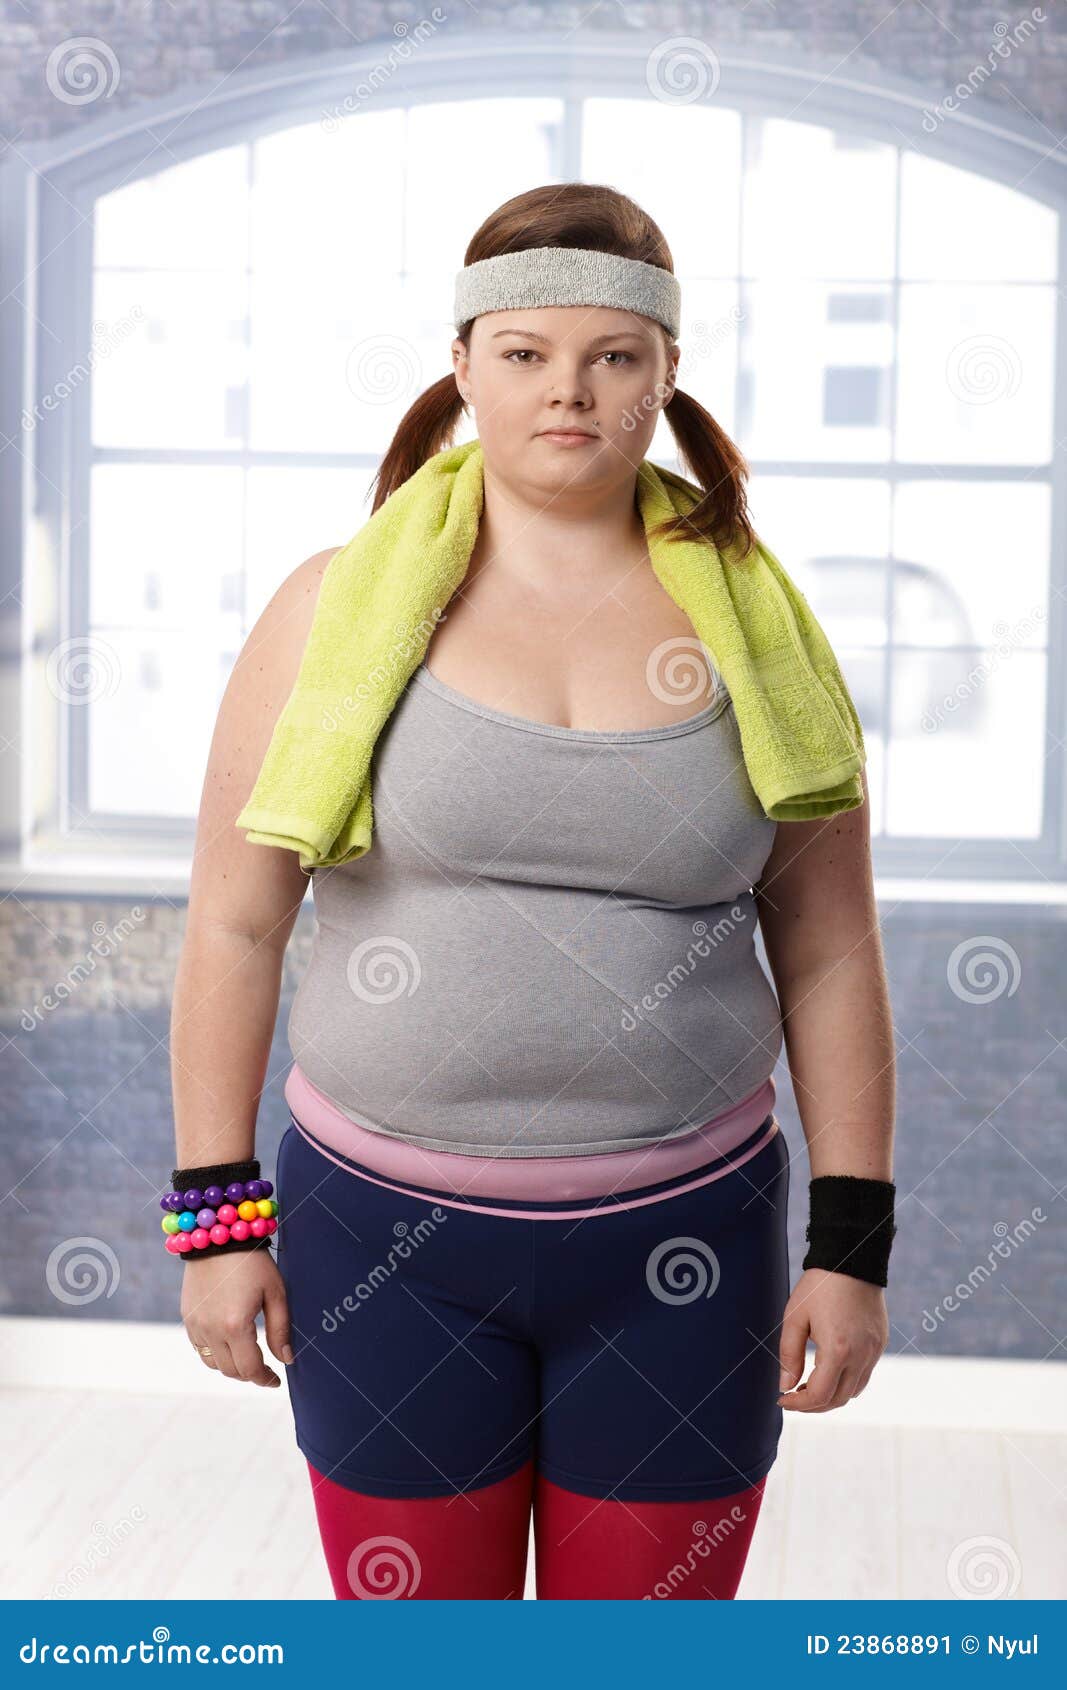 fat-woman-sportswear-23868891.jpg